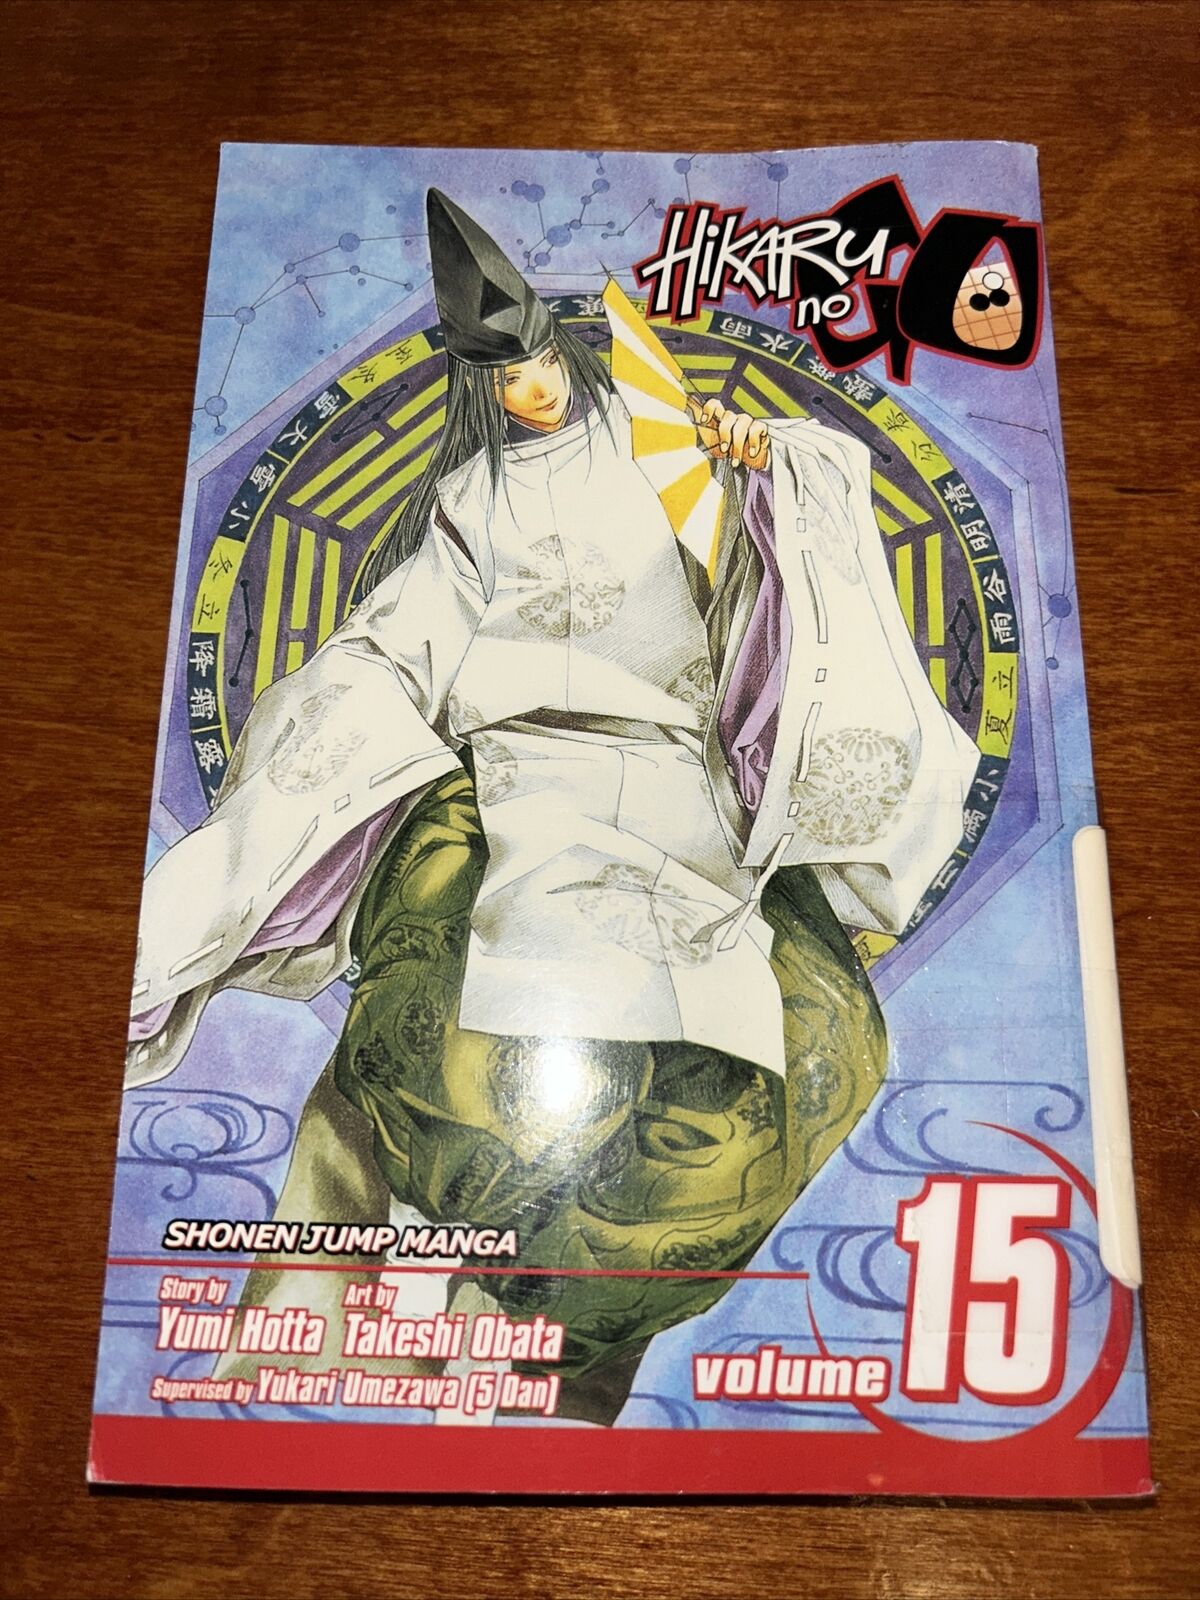 Hikaru no Go, Volume / Vol. 15 Manga English OOP 9781421521923 - RARE. B5